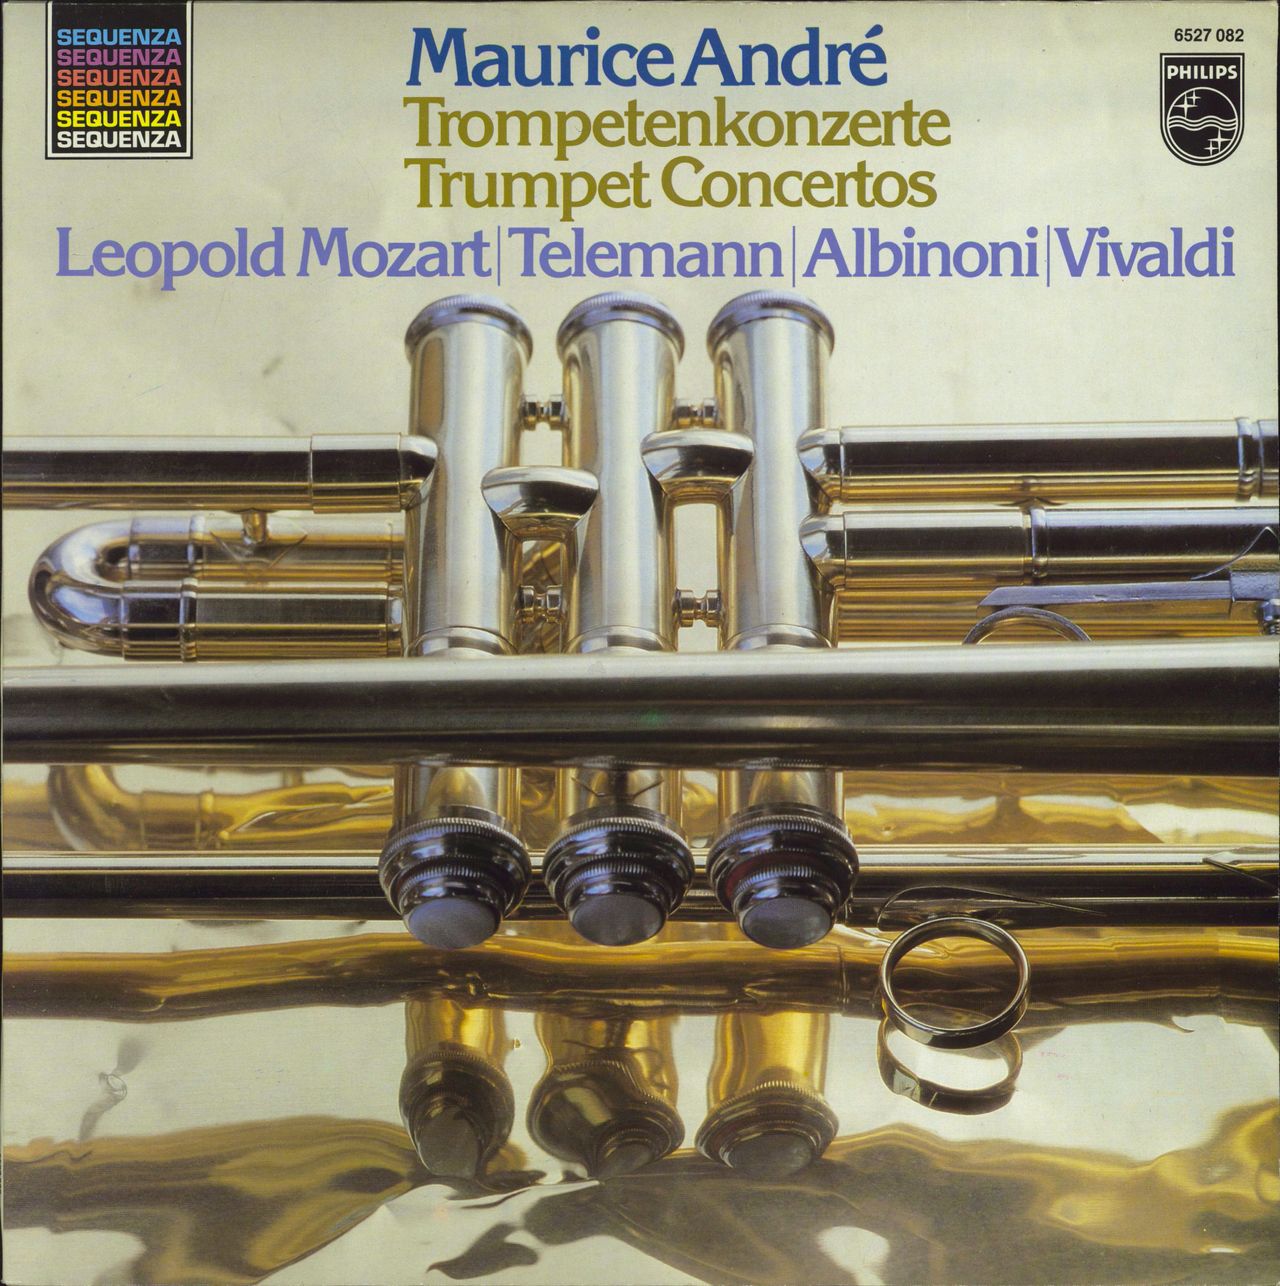 Maurice André Trumpetenkonzerte Dutch vinyl LP album (LP record) 6527082